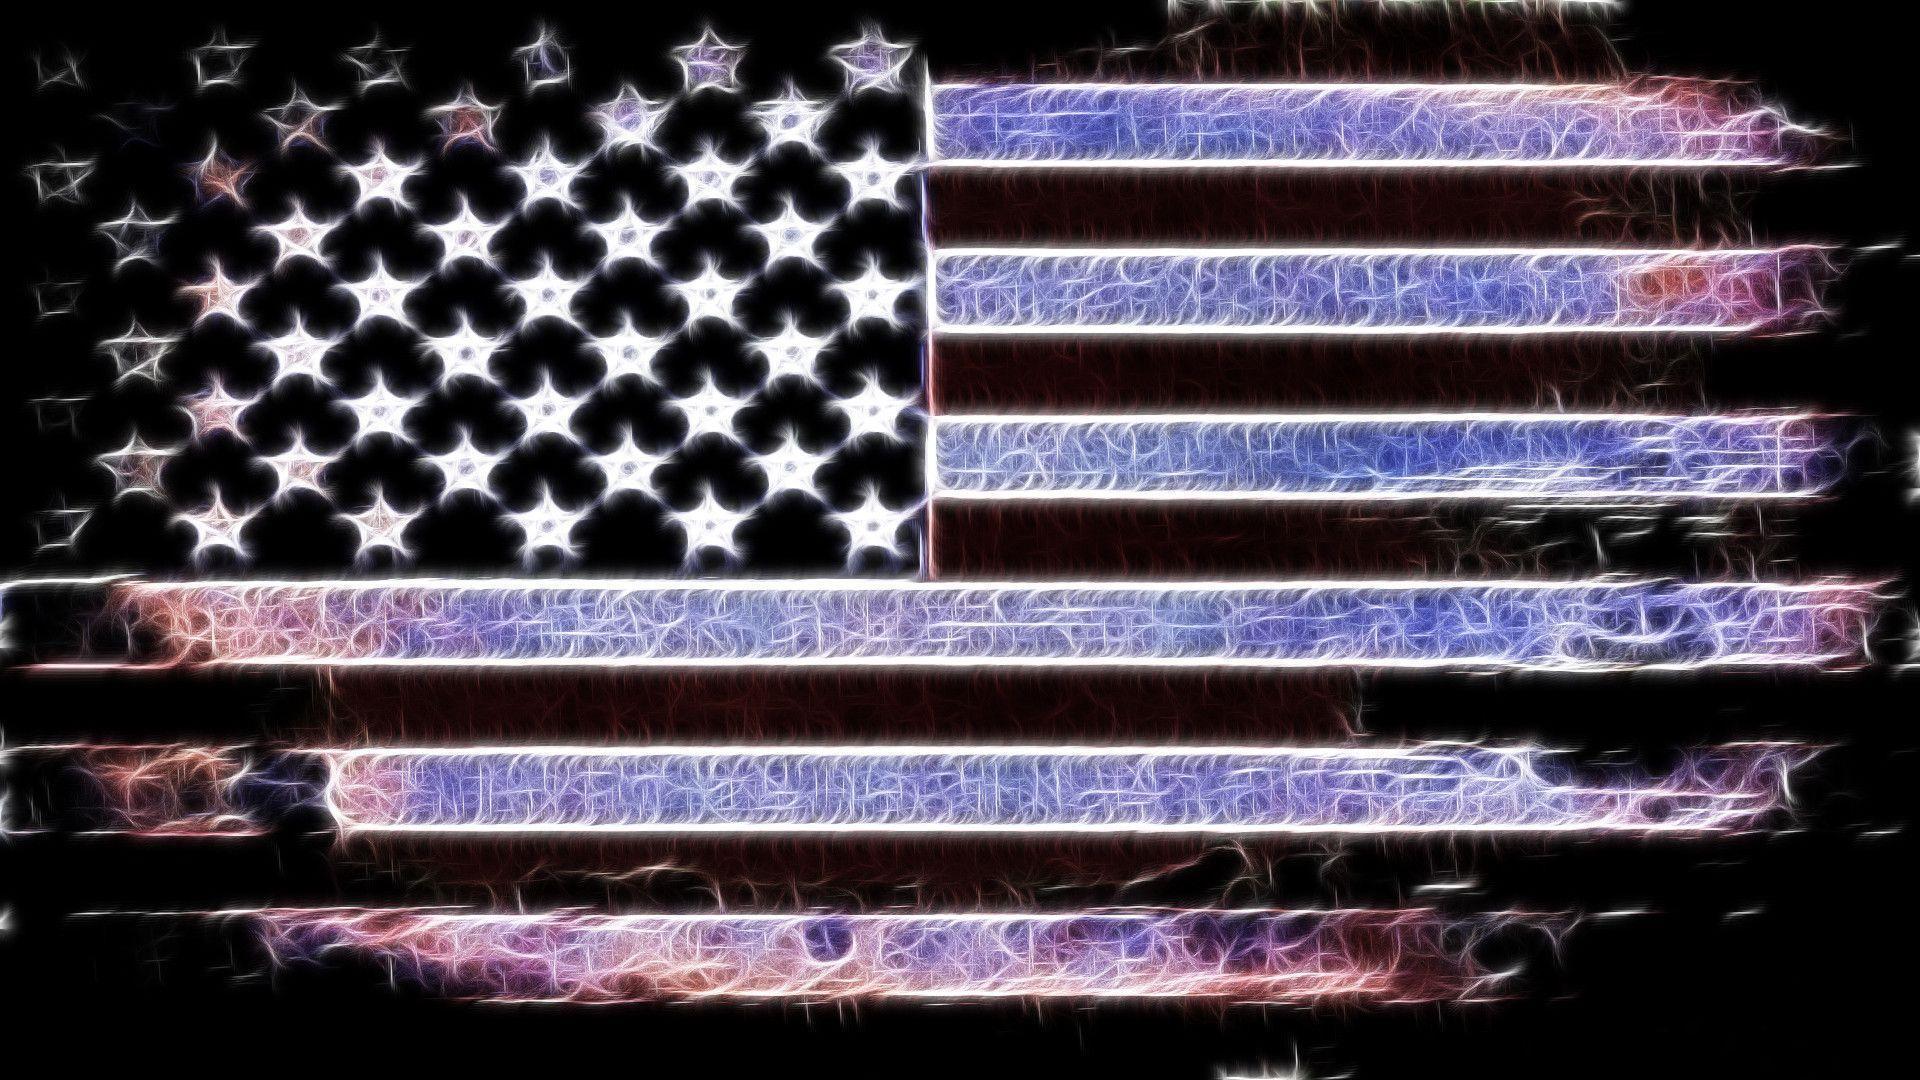 American Flag Desktop Backgrounds